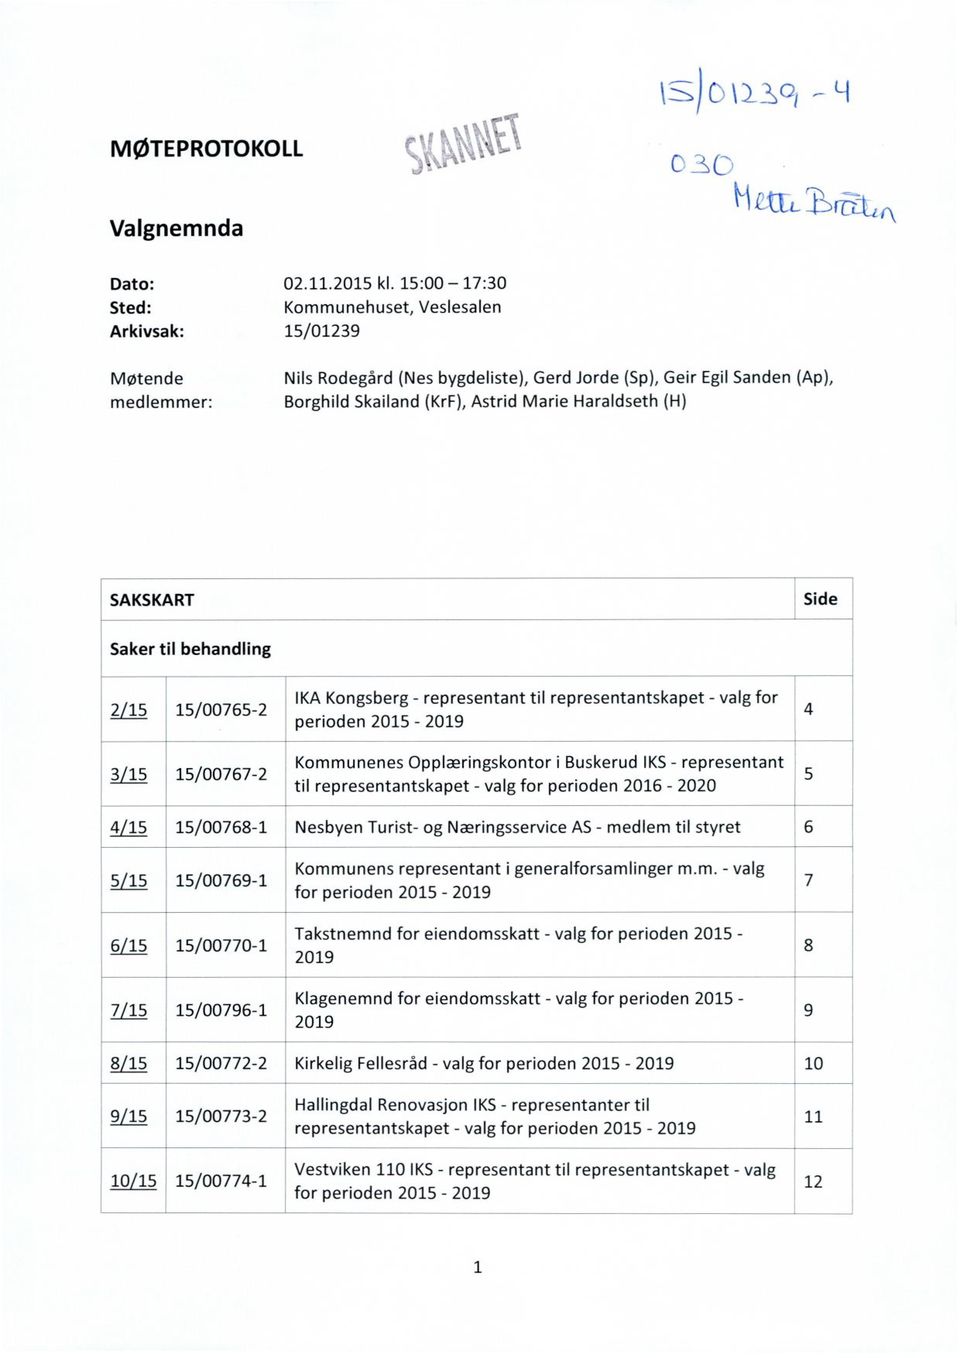 Side Saker til behandling 2/15 15/00765-2 IKA Kongsberg - representant til representantskapet - valg for perioden 2015-2019 4 3/15 15/00767-2 Kommunenes Opplæringskontor i Buskerud IKS - representant